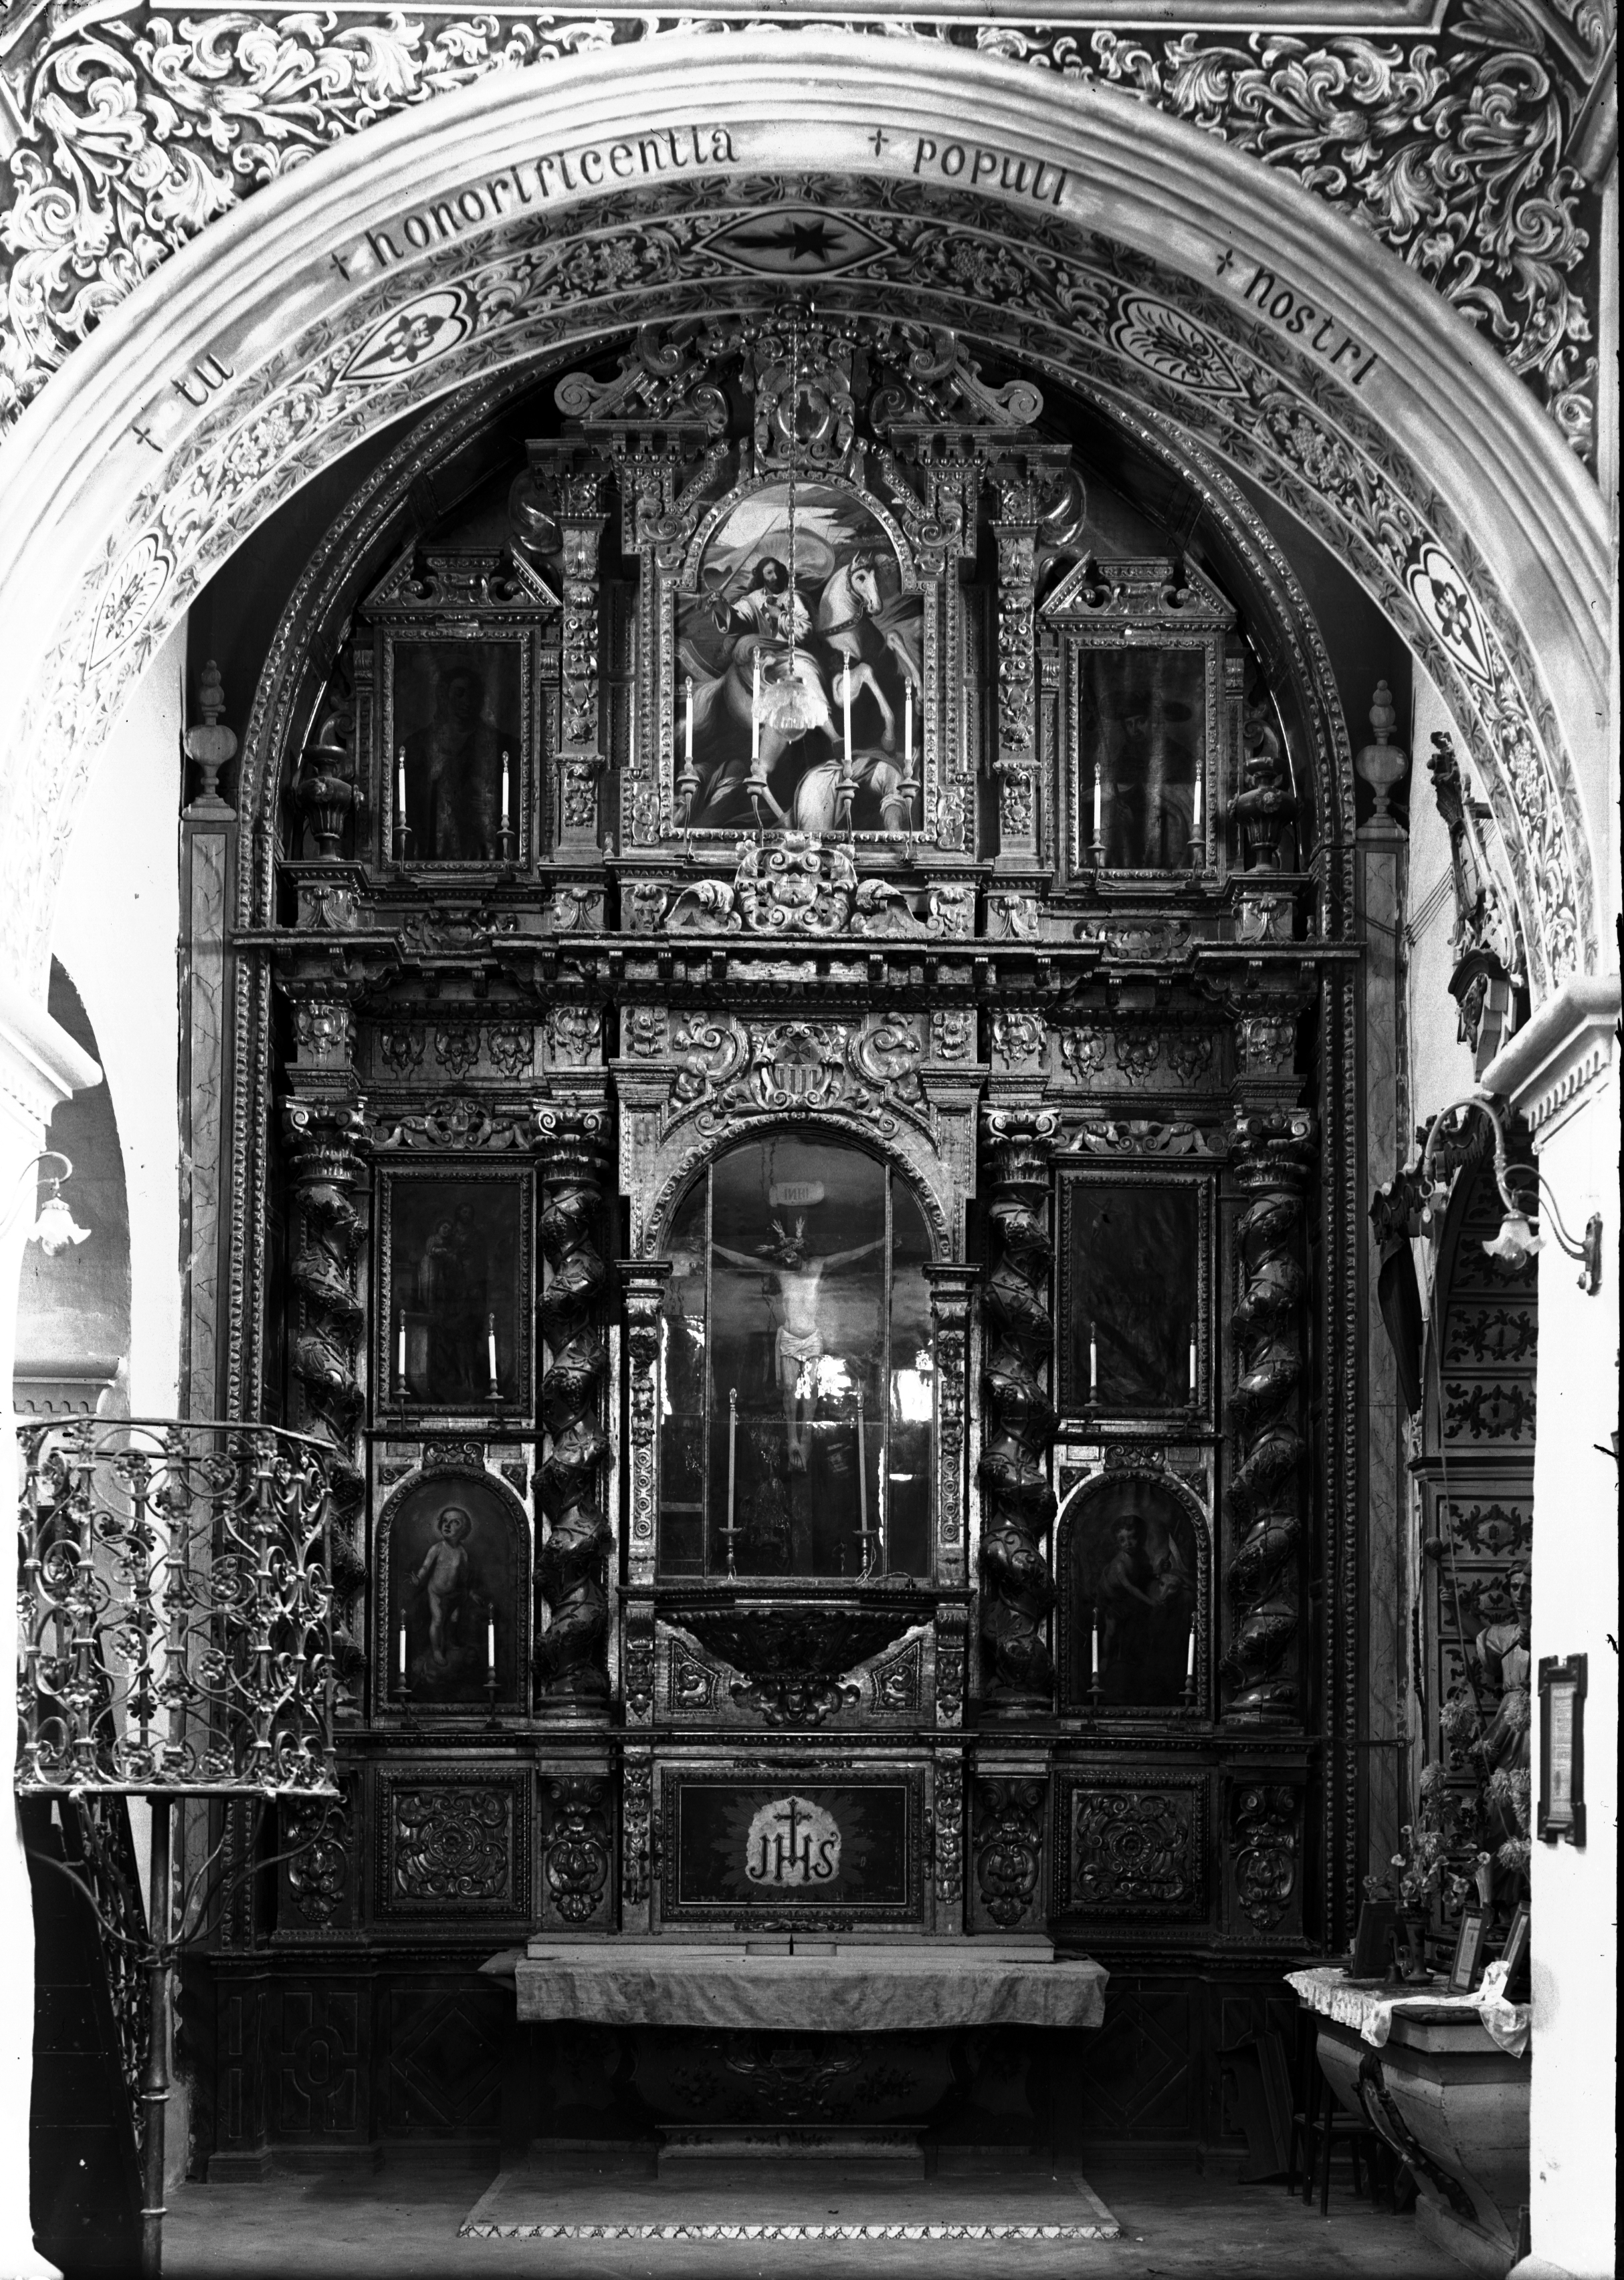 Retablo mayor. Ermita de Nuestra
Señora de Belén, Pilas (Sevilla).
Fotografía de Antonio Sancho. 1936.
Propiedad de la Fototeca del Laboratorio
de Arte de la Universidad de Sevilla.